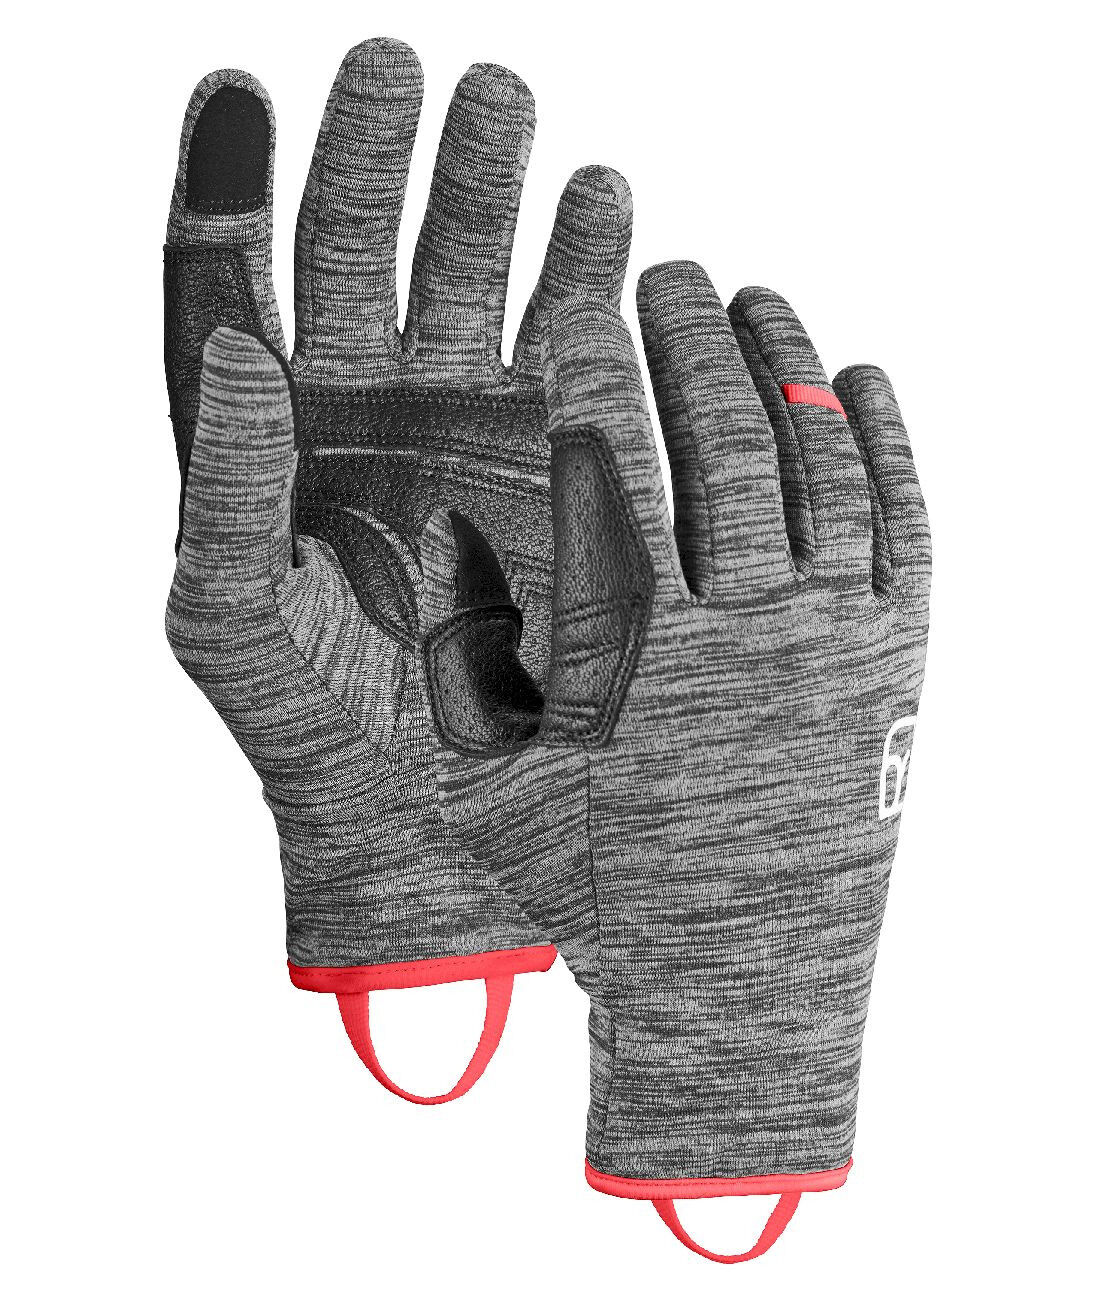 Ortovox Fleece Light Glove - Gants ski femme